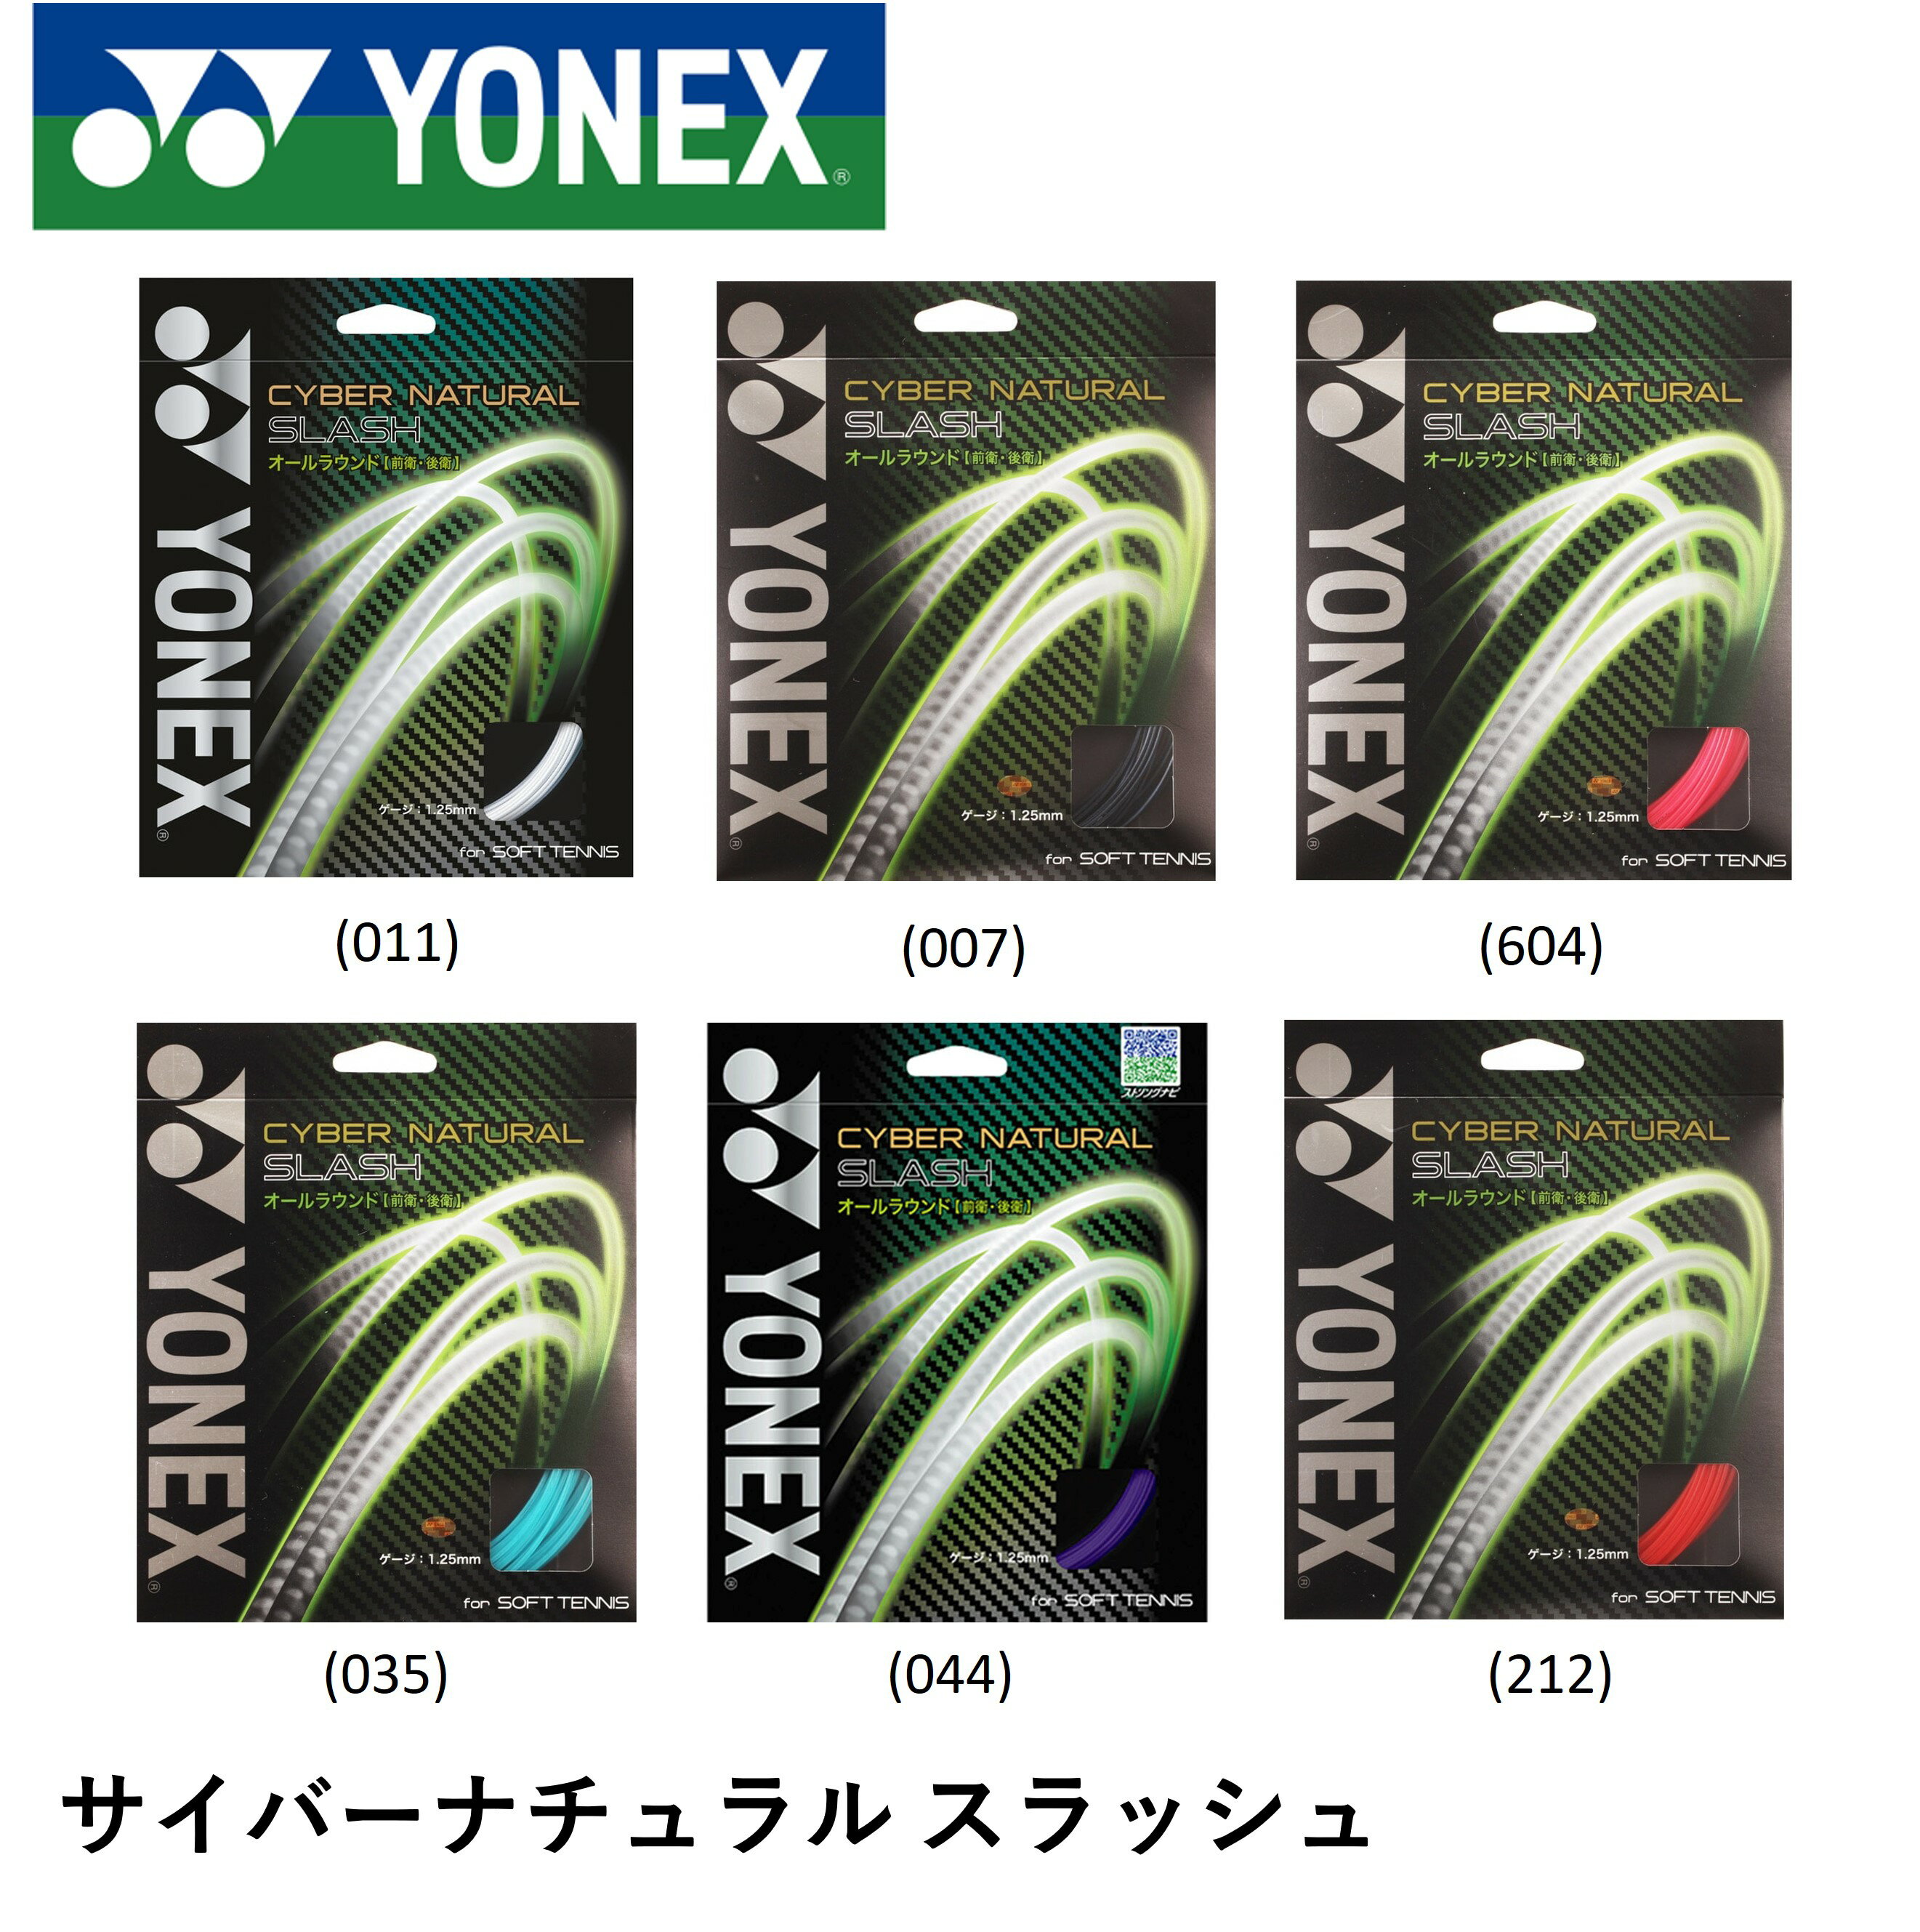 YONEX ヨネックス ソフトテニス ガット ソフトテニスストリング サイバーナチュラルスラッシュ CSG550SL